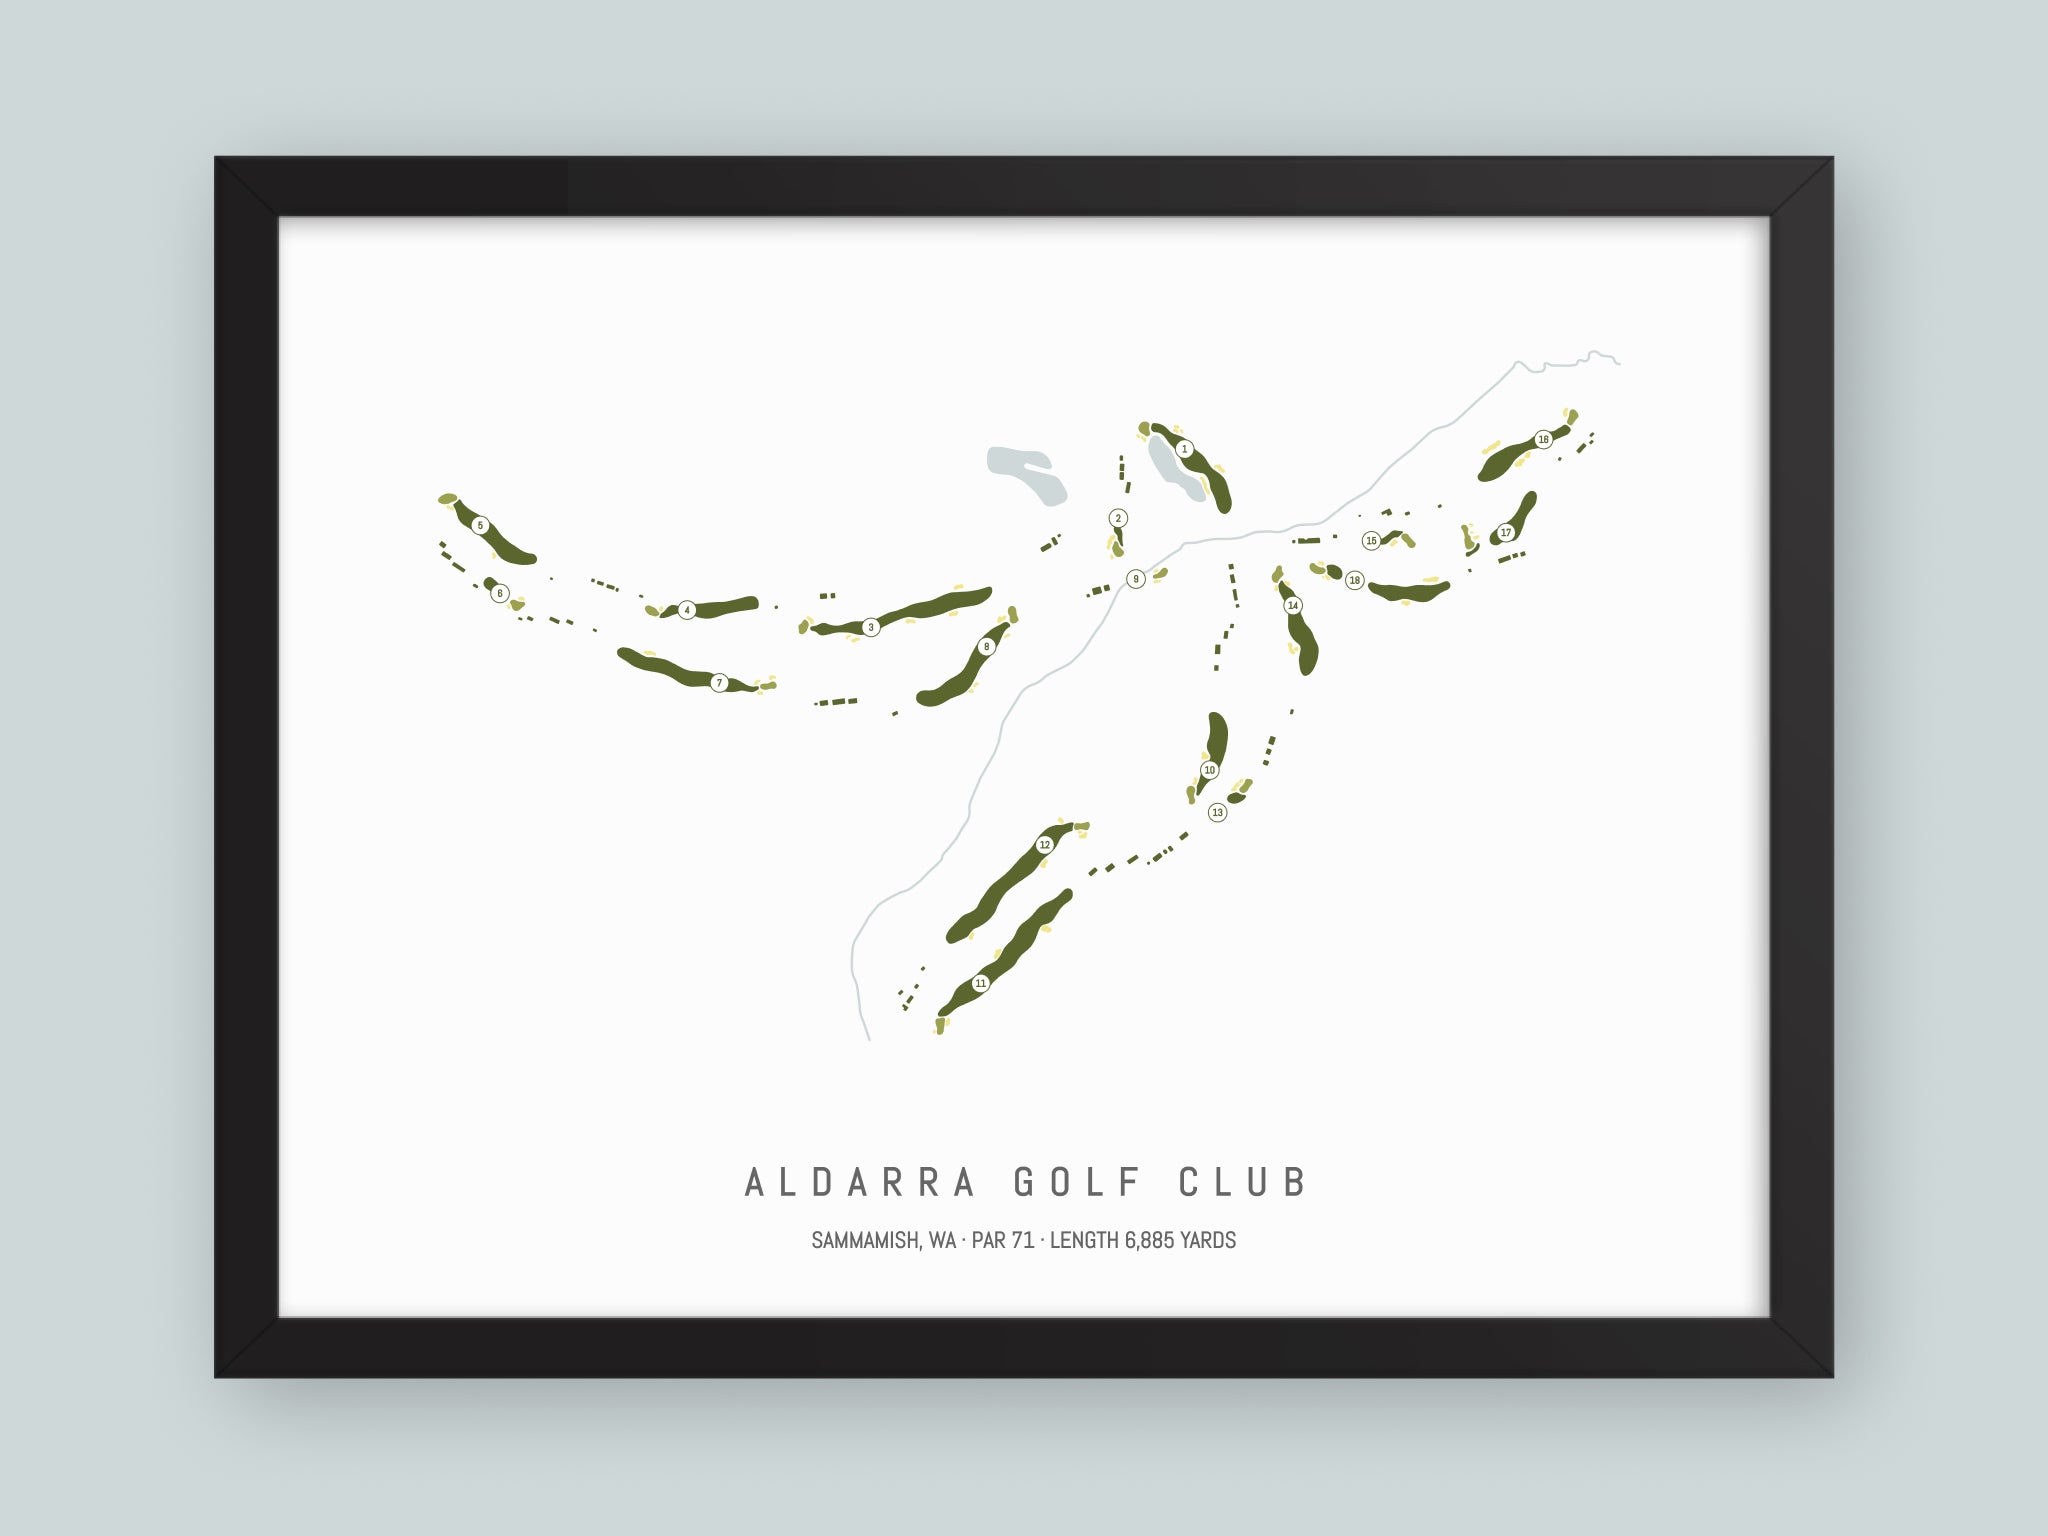 Aldarra Golf Club